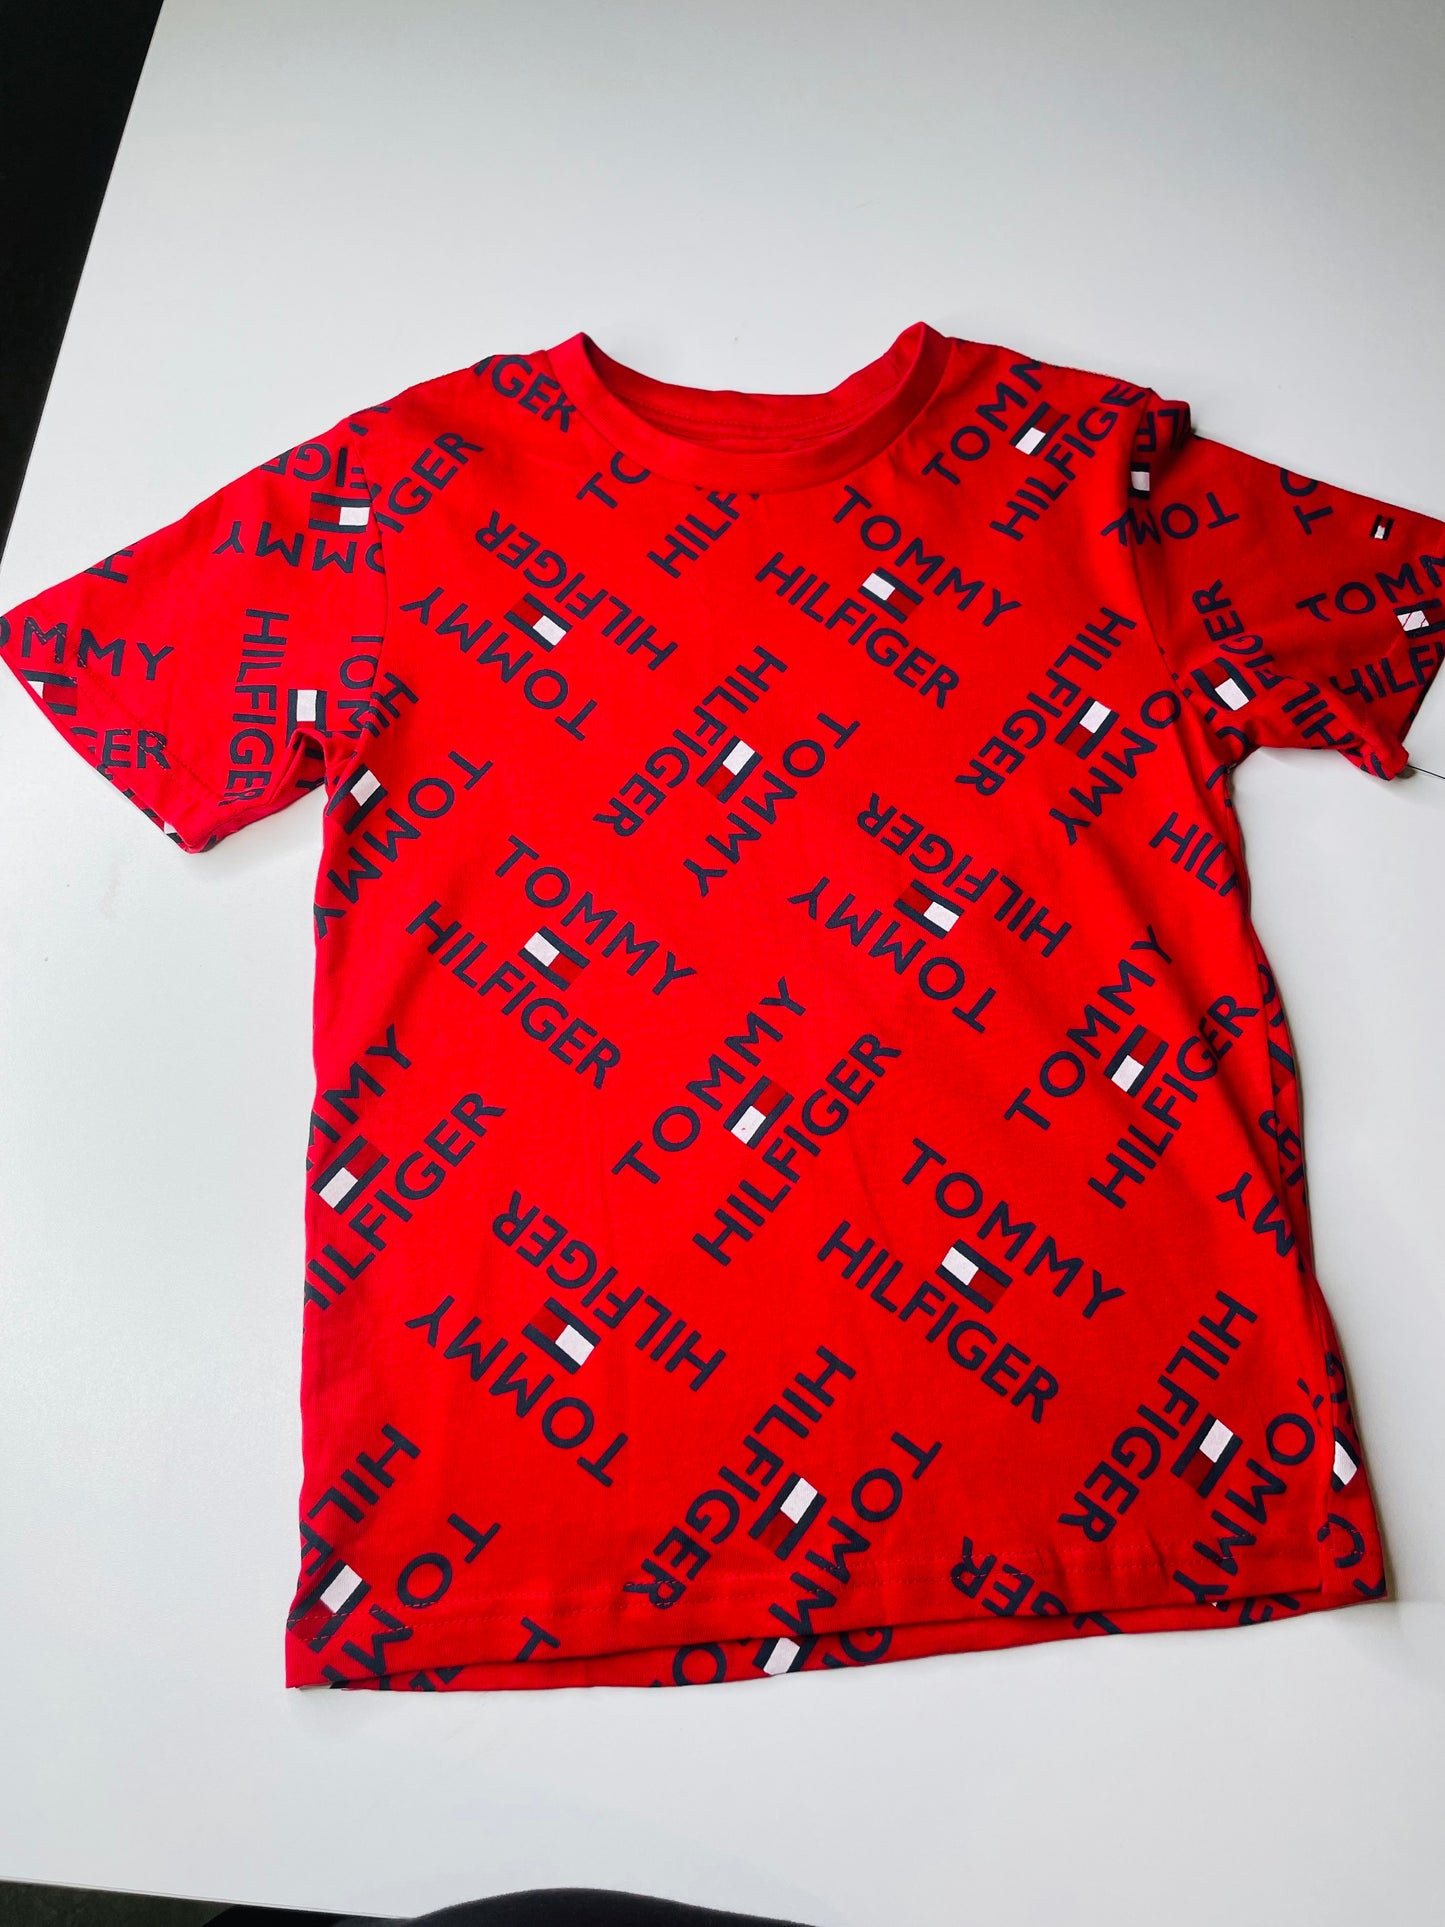 Tommy Hilfiger shirt for kids